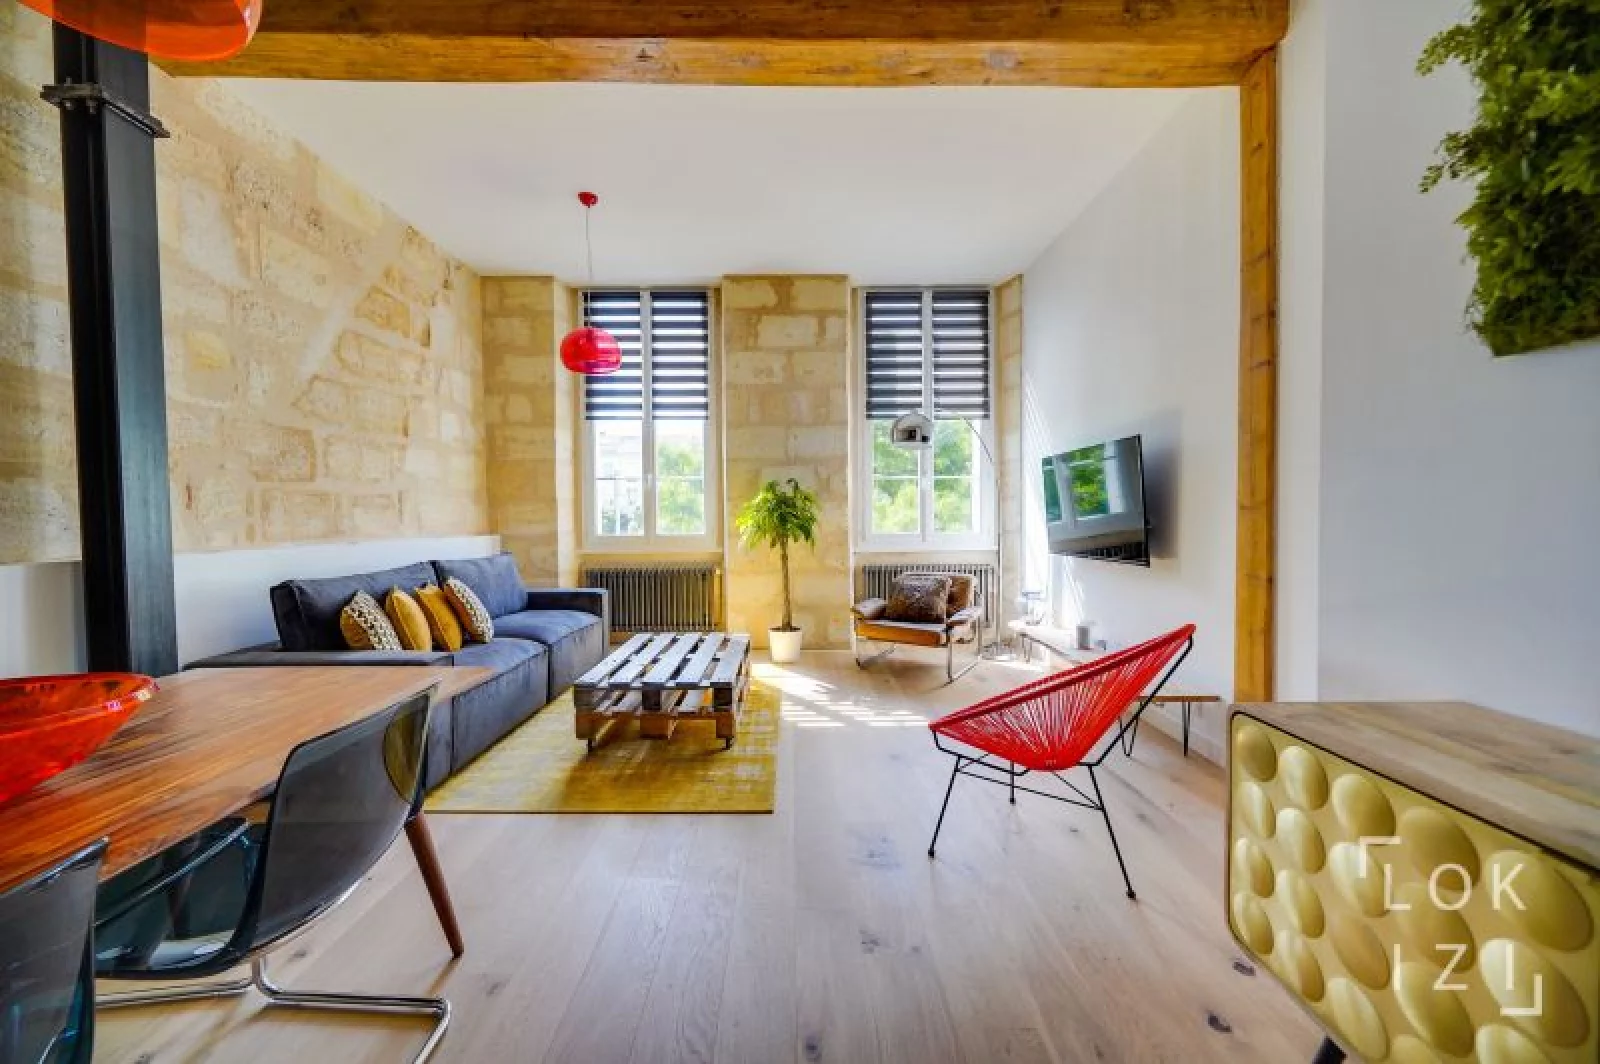 Location appartement meublé 3 pièces 75m² (Bordeaux - Chartrons)